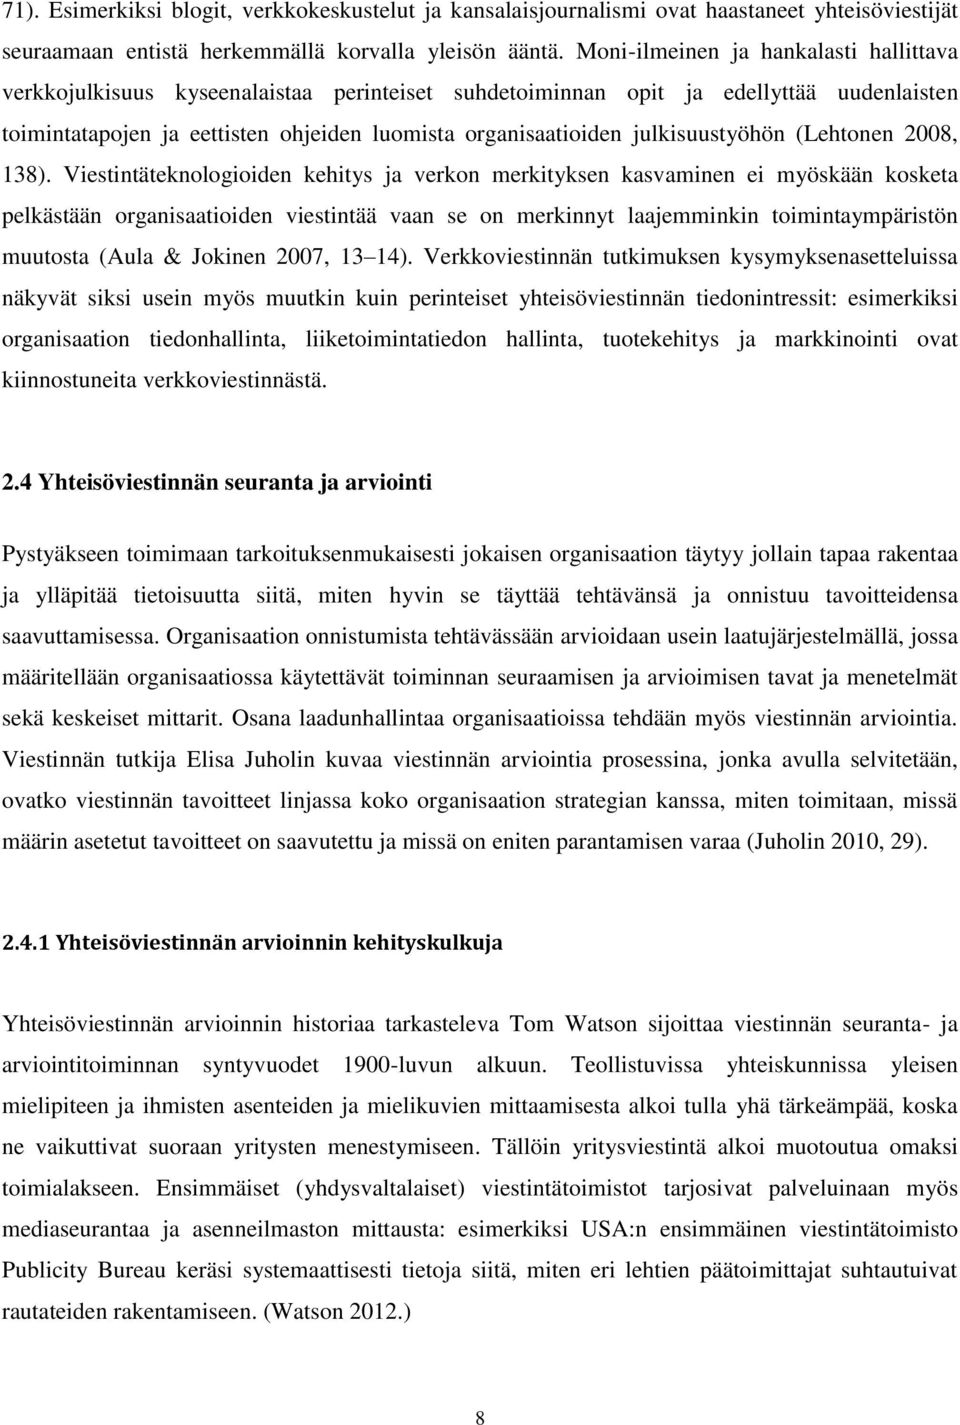 julkisuustyöhön (Lehtonen 2008, 138).